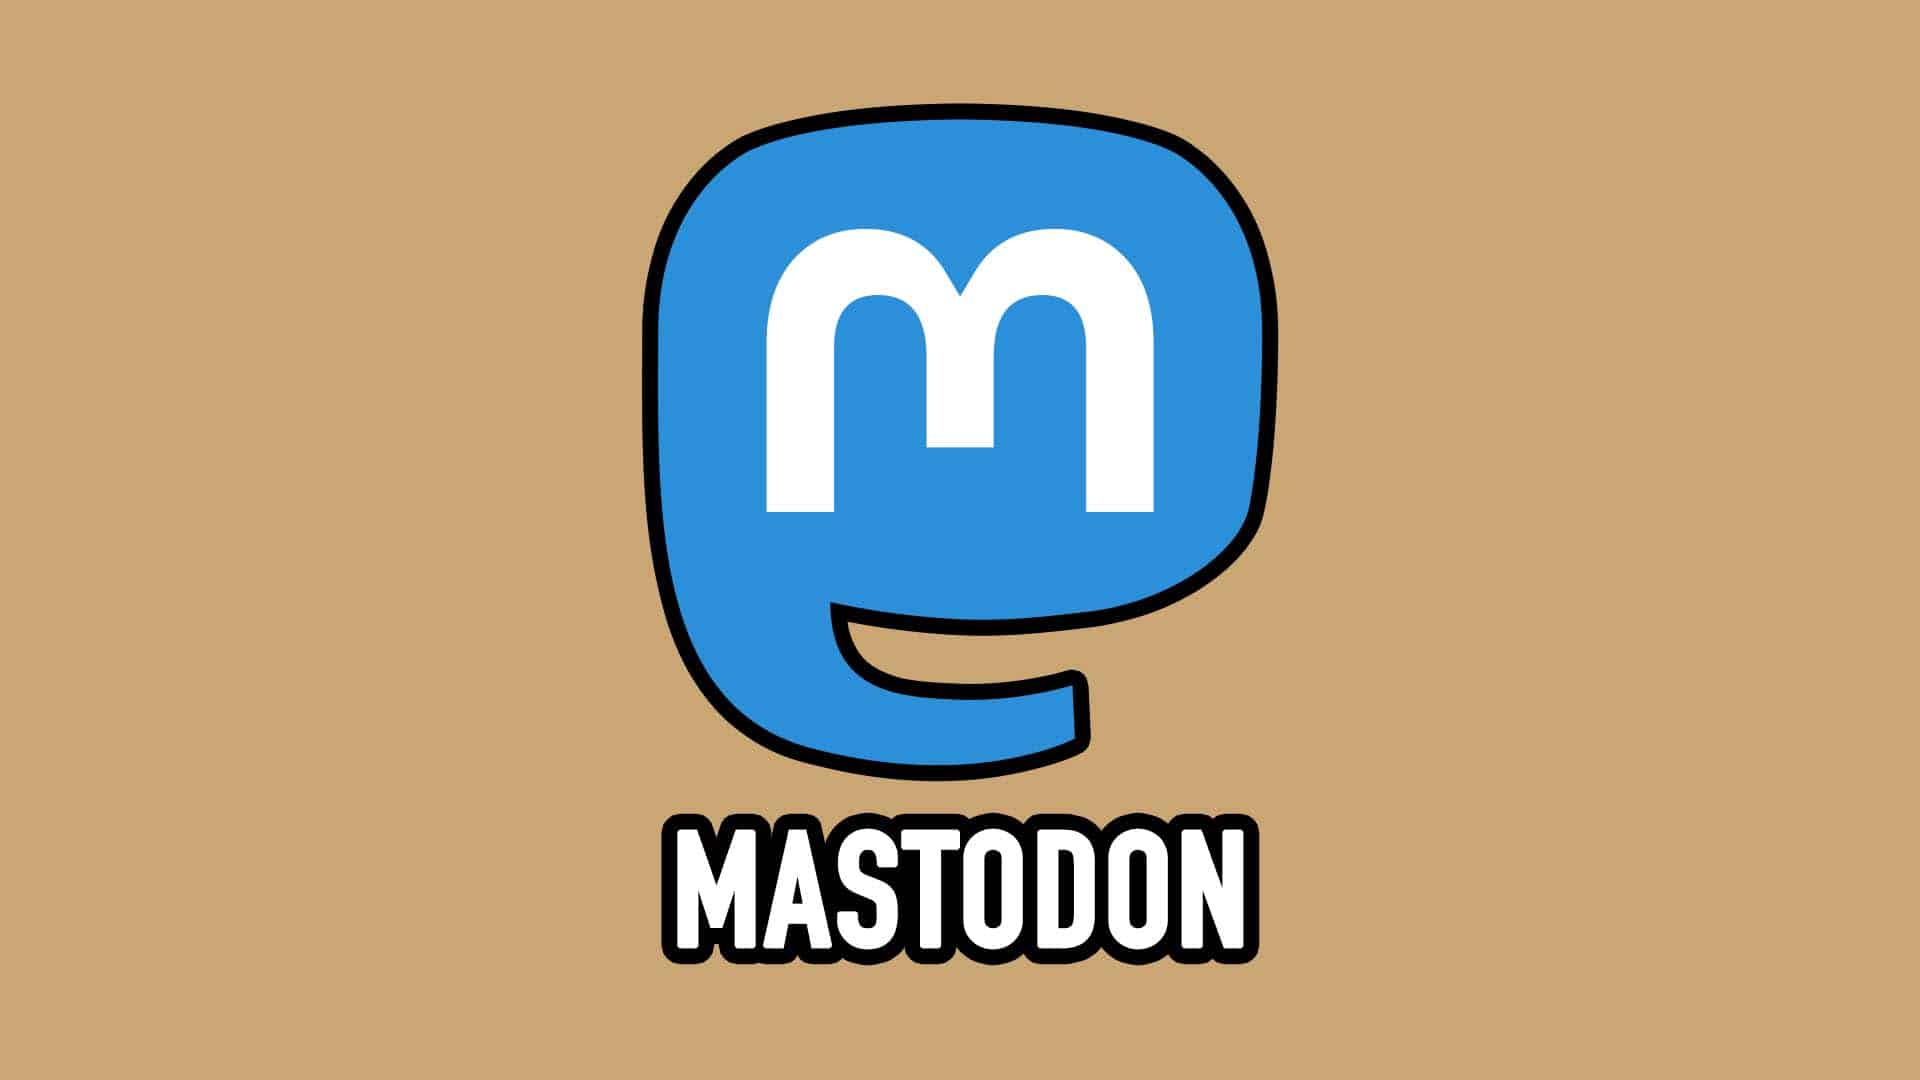 Update Mastodon 4.2